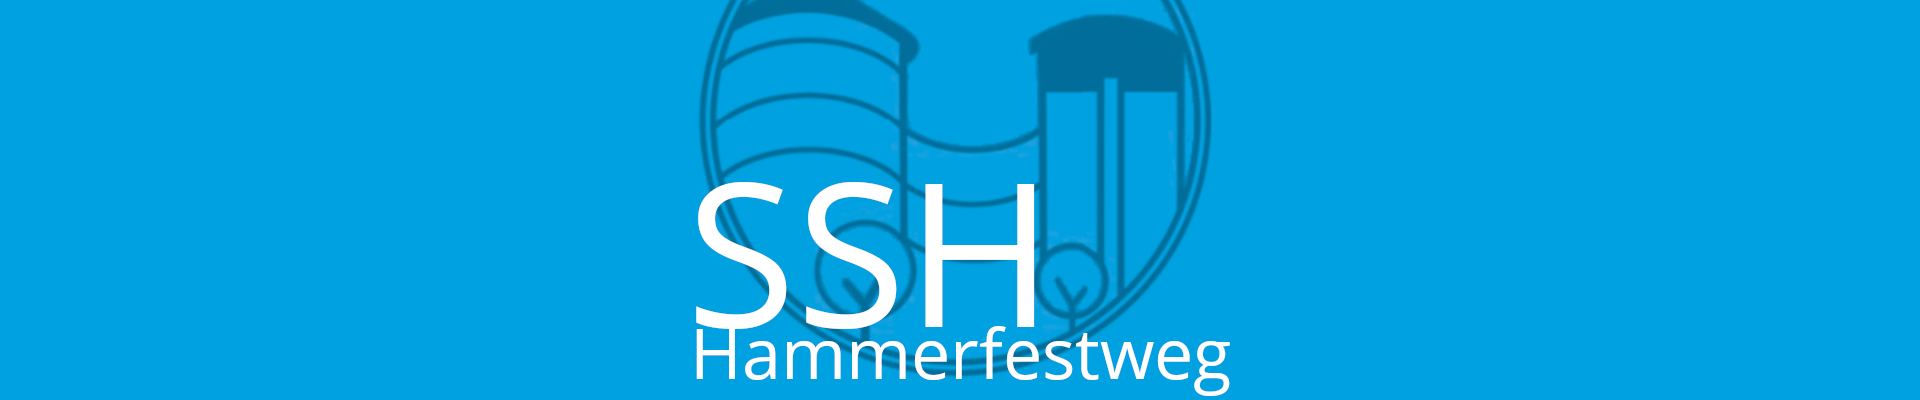 Header_SSH_Logo